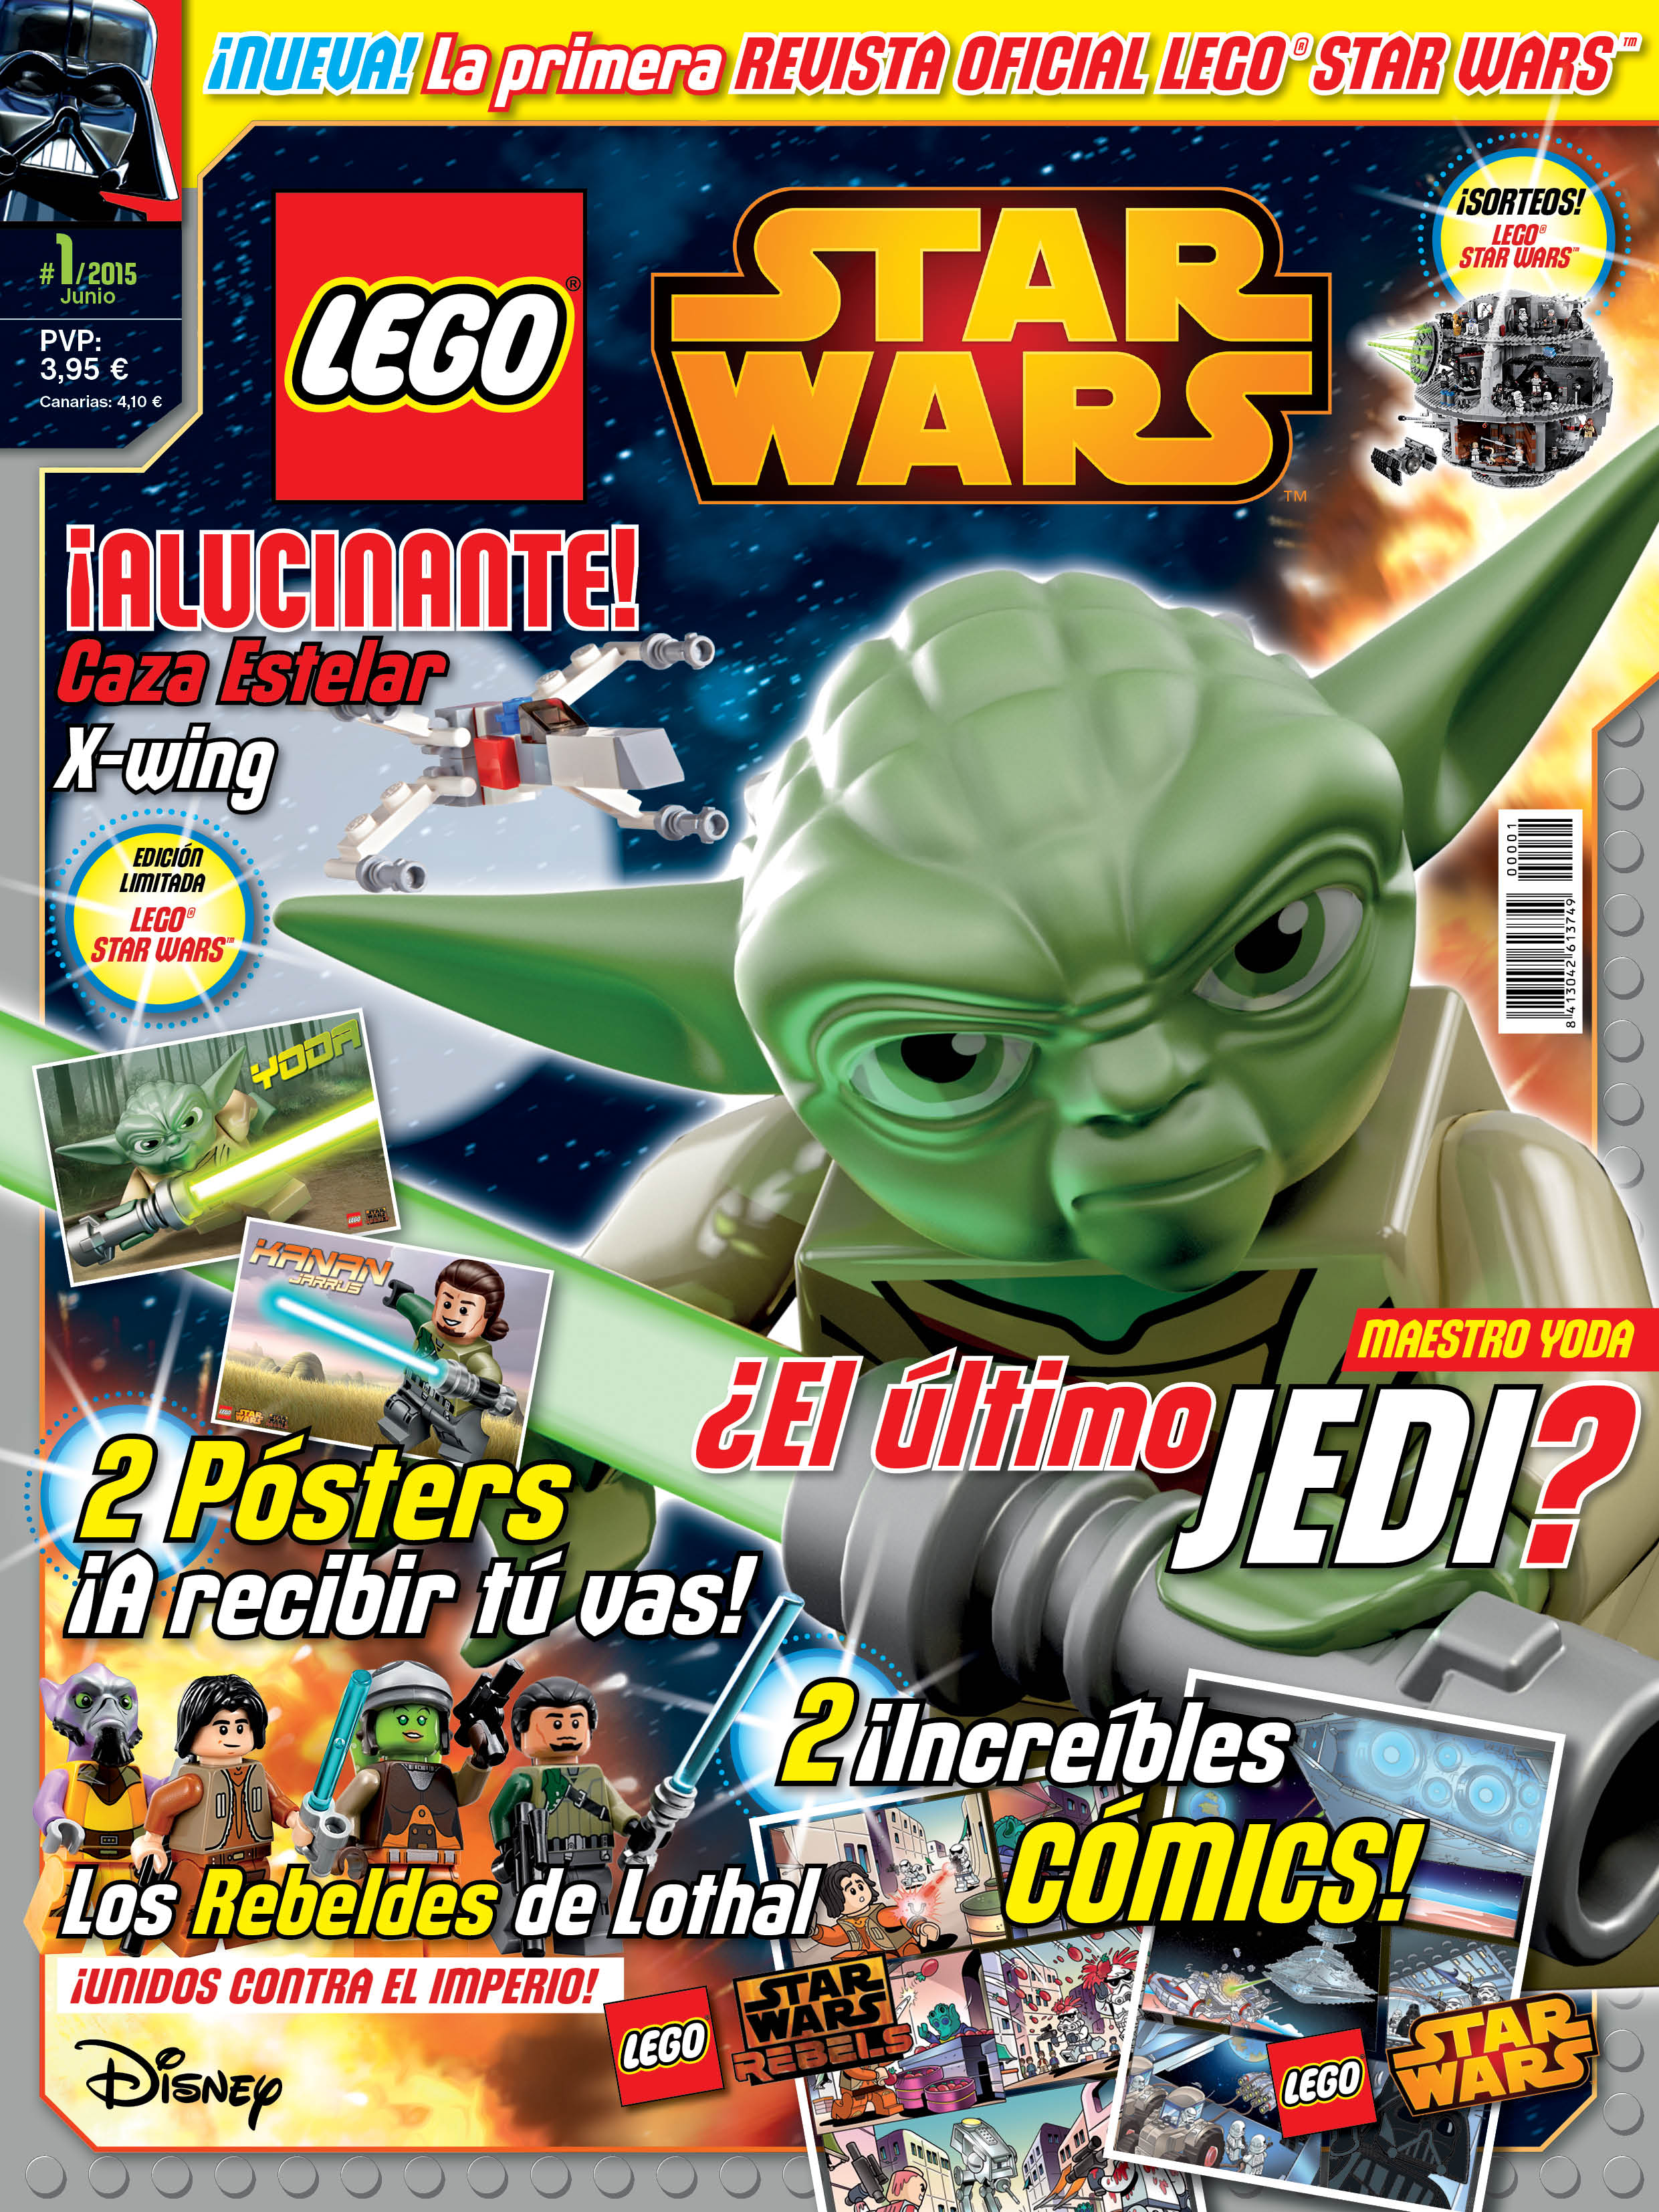 Lego Star Wars-revista nº 42 con Star Destroyer y tarjeta de edición limitada 